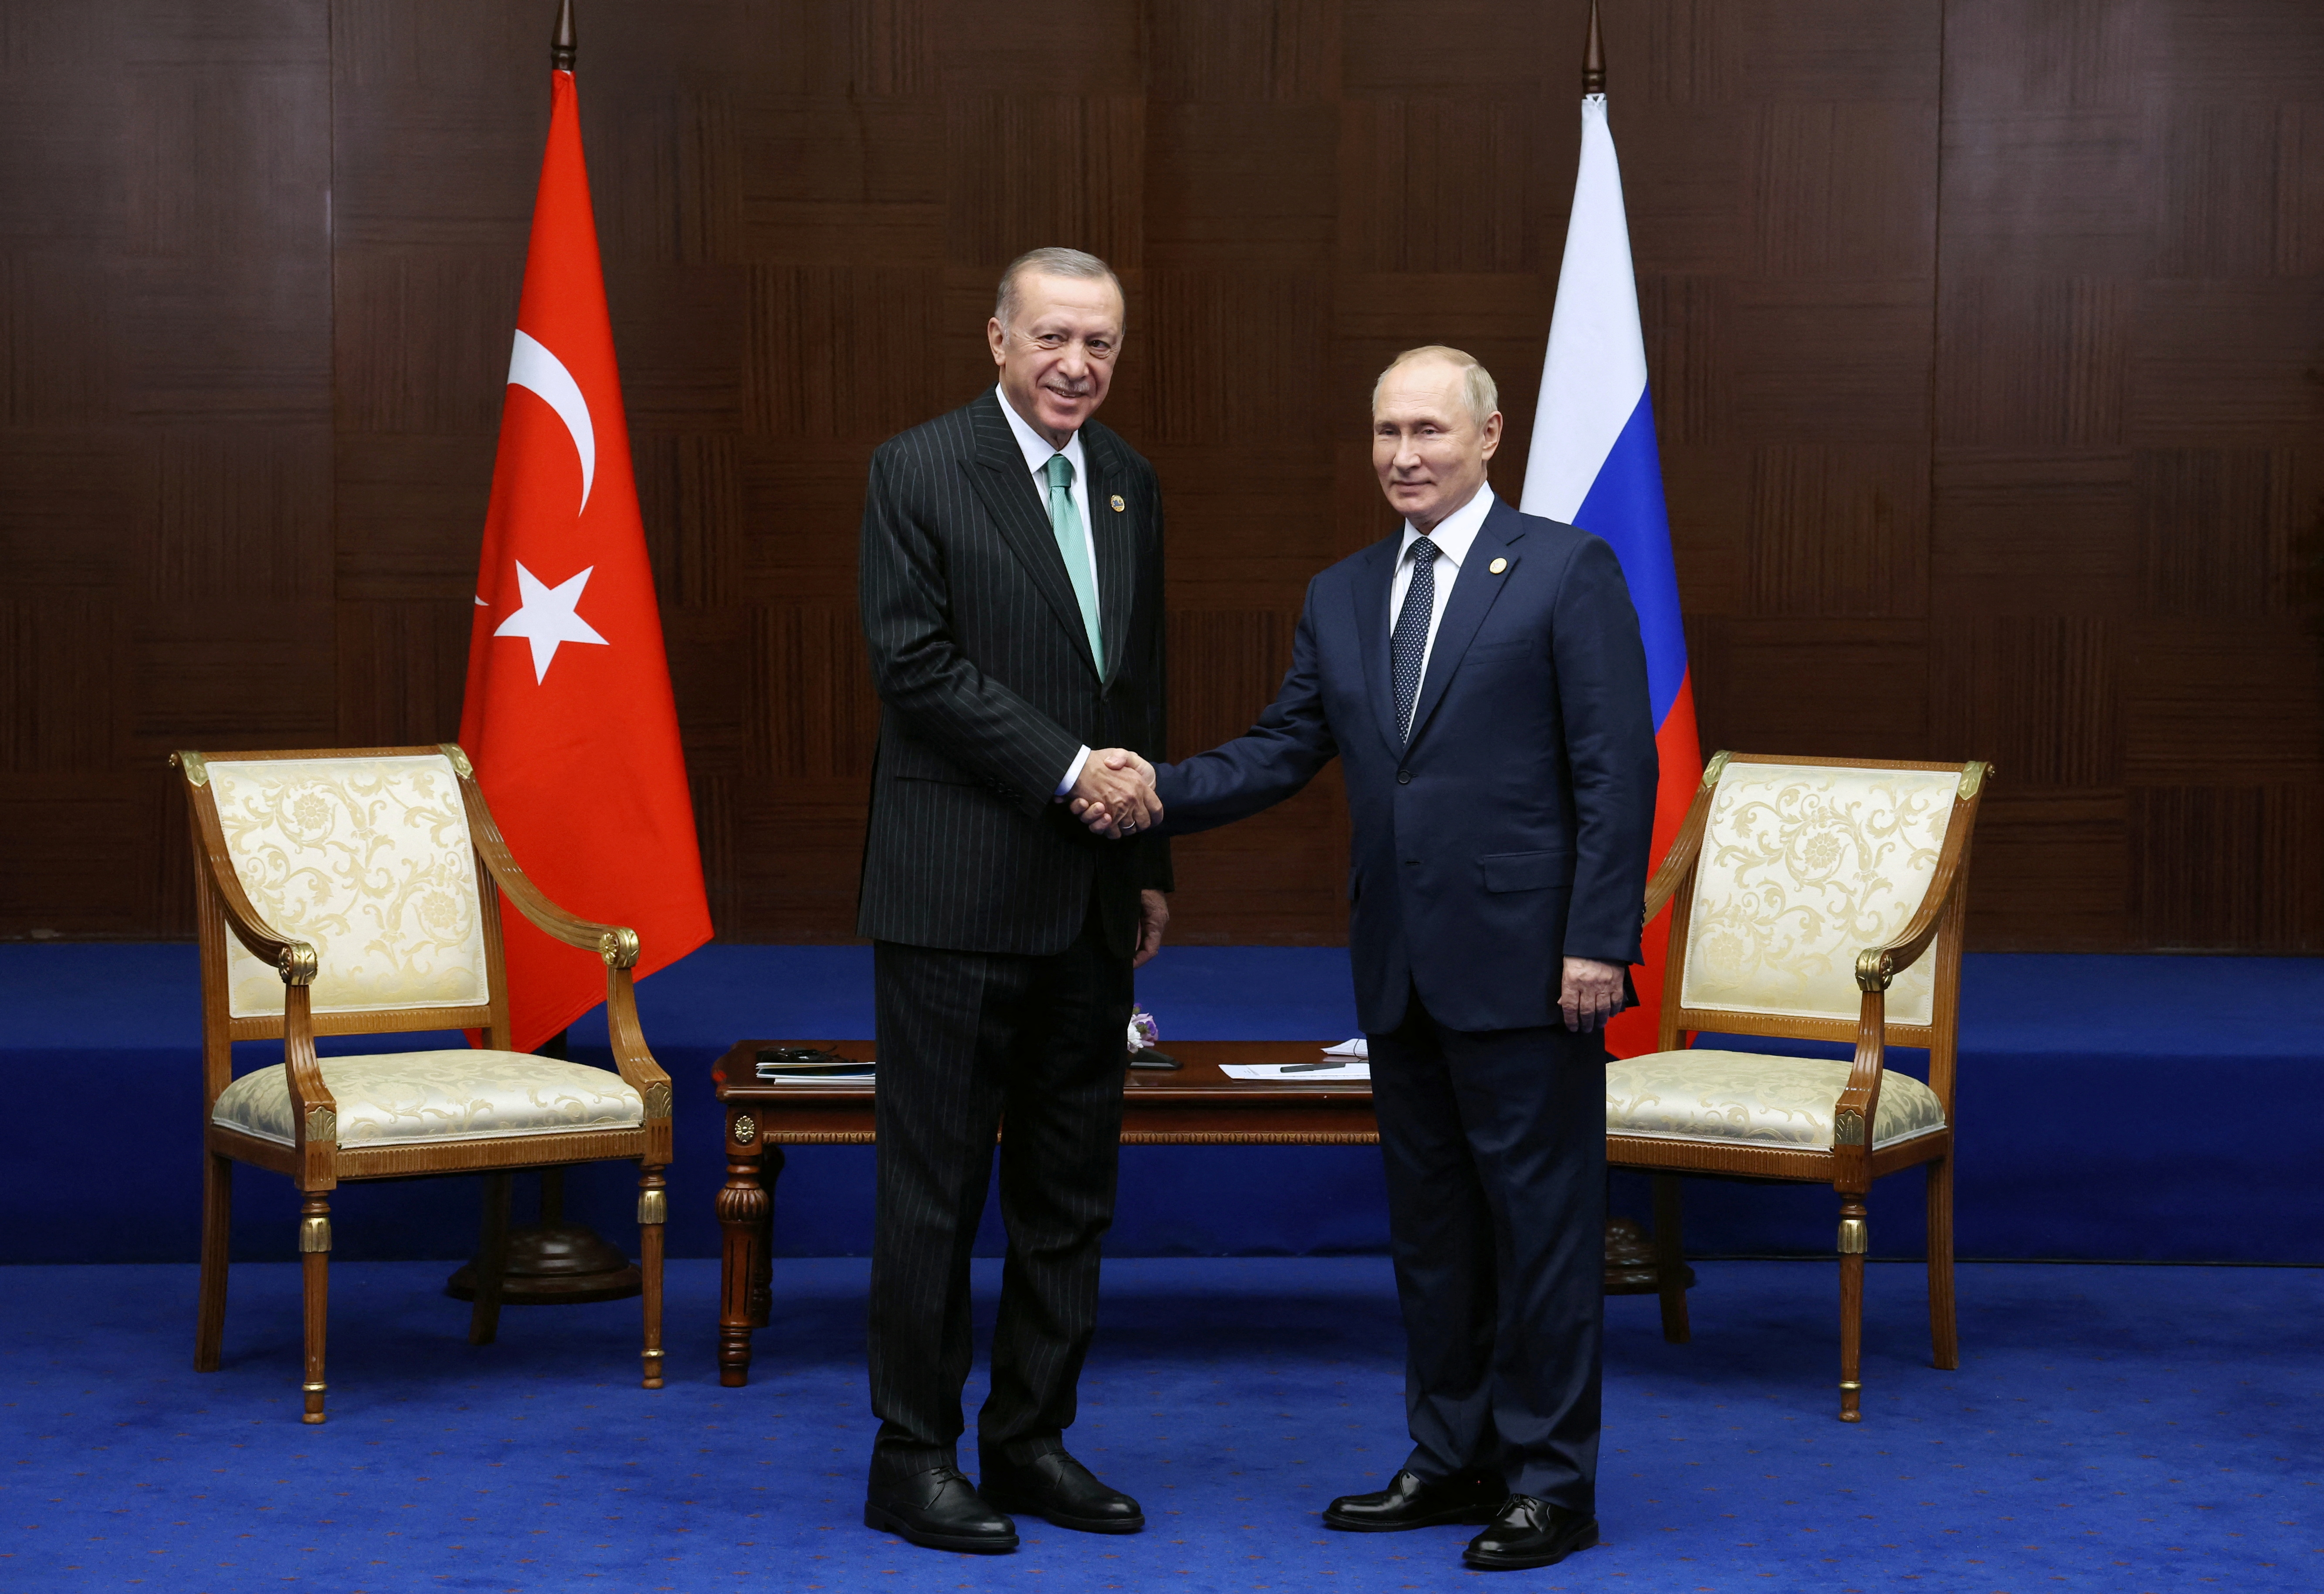 Putin Thổ Nhĩ Kỳ kế hoạch thay thế: Putin là một nhà lãnh đạo nổi bật của thế giới, và việc ông có kế hoạch thay thế với Thổ Nhĩ Kỳ cho thấy sự tốt đẹp của quốc gia này đang được biết đến nhiều hơn. Hình ảnh đại diện cho kế hoạch này có thể hấp dẫn người xem muốn tìm hiểu thêm về quan hệ giữa các quốc gia và những tiềm năng của chúng.